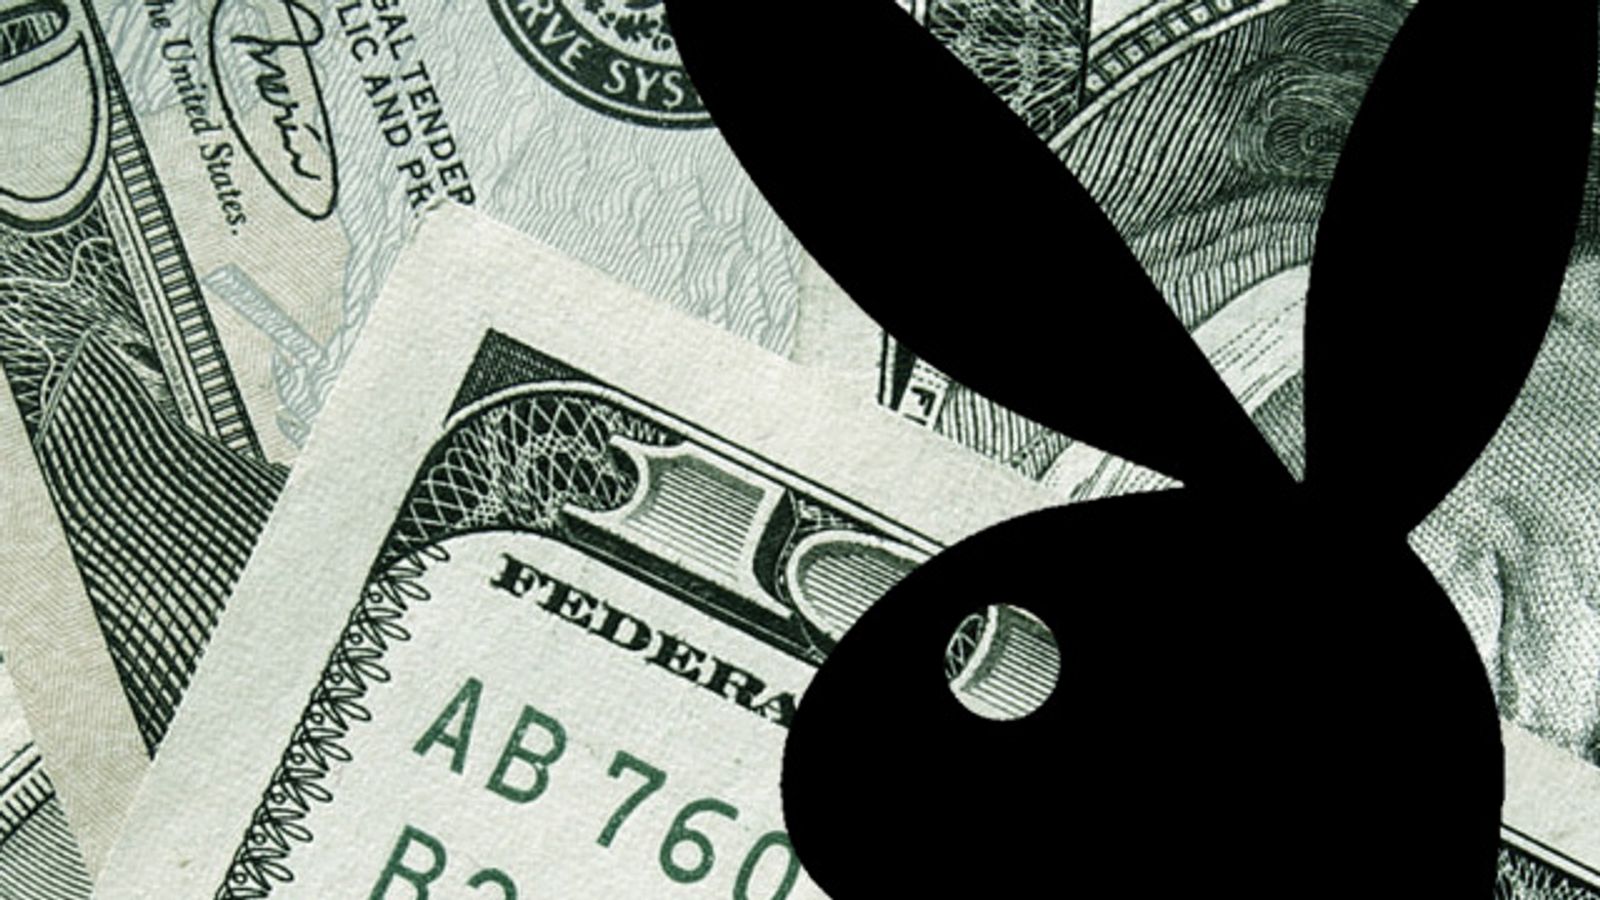 Playboy Announces Second Quarter Losses of $9M